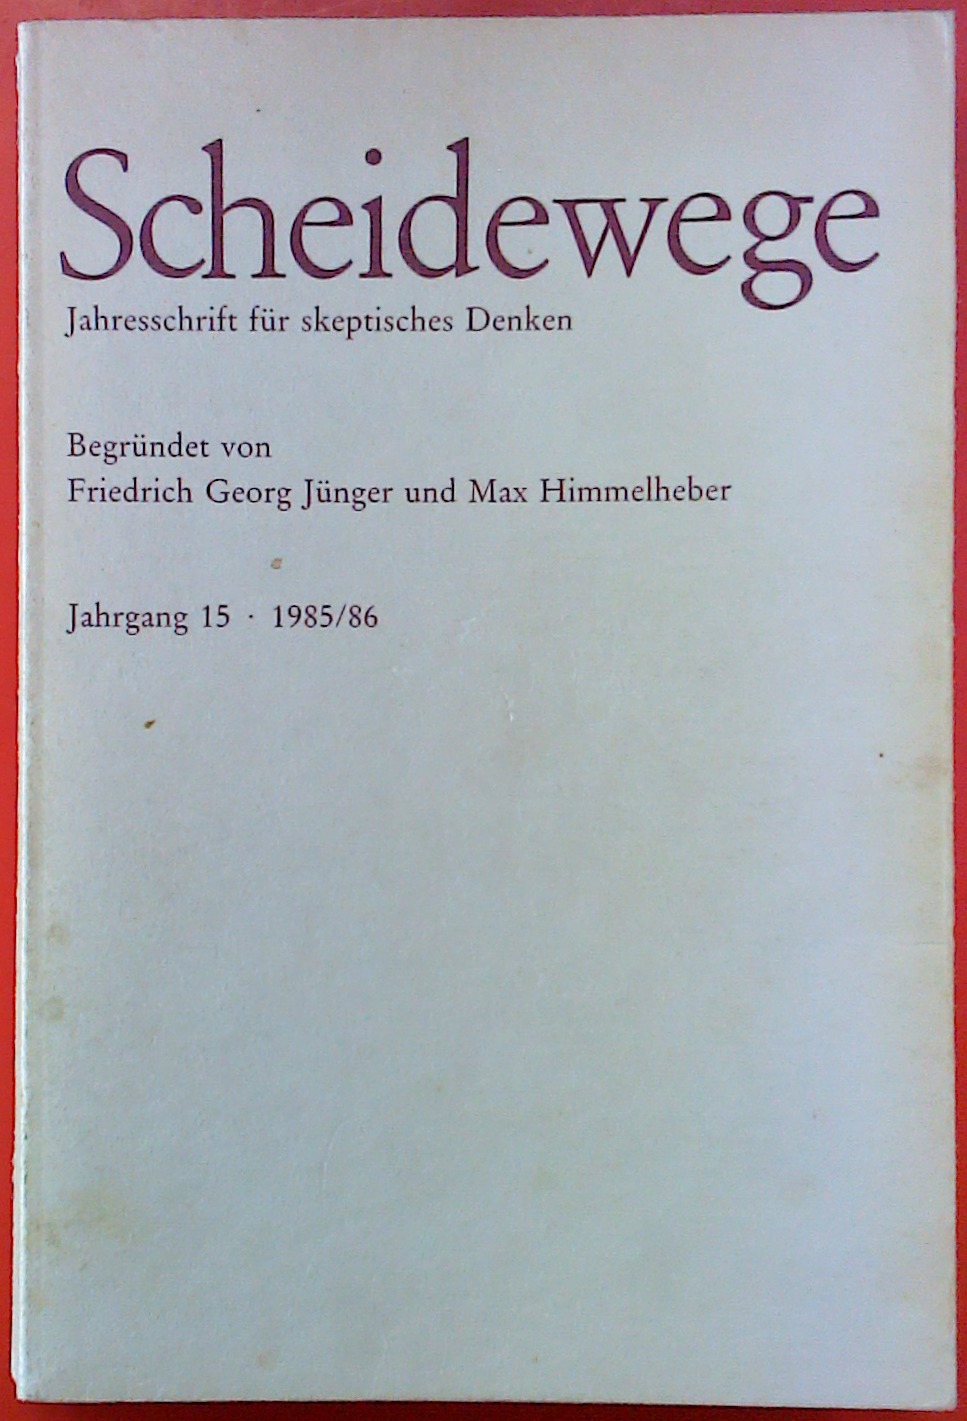 Scheidewege. Jahresschrift für skeptisches Denken. Jahrgang 15. 1985/86. - Begründet von Georg Jünger und Max Himmelheber